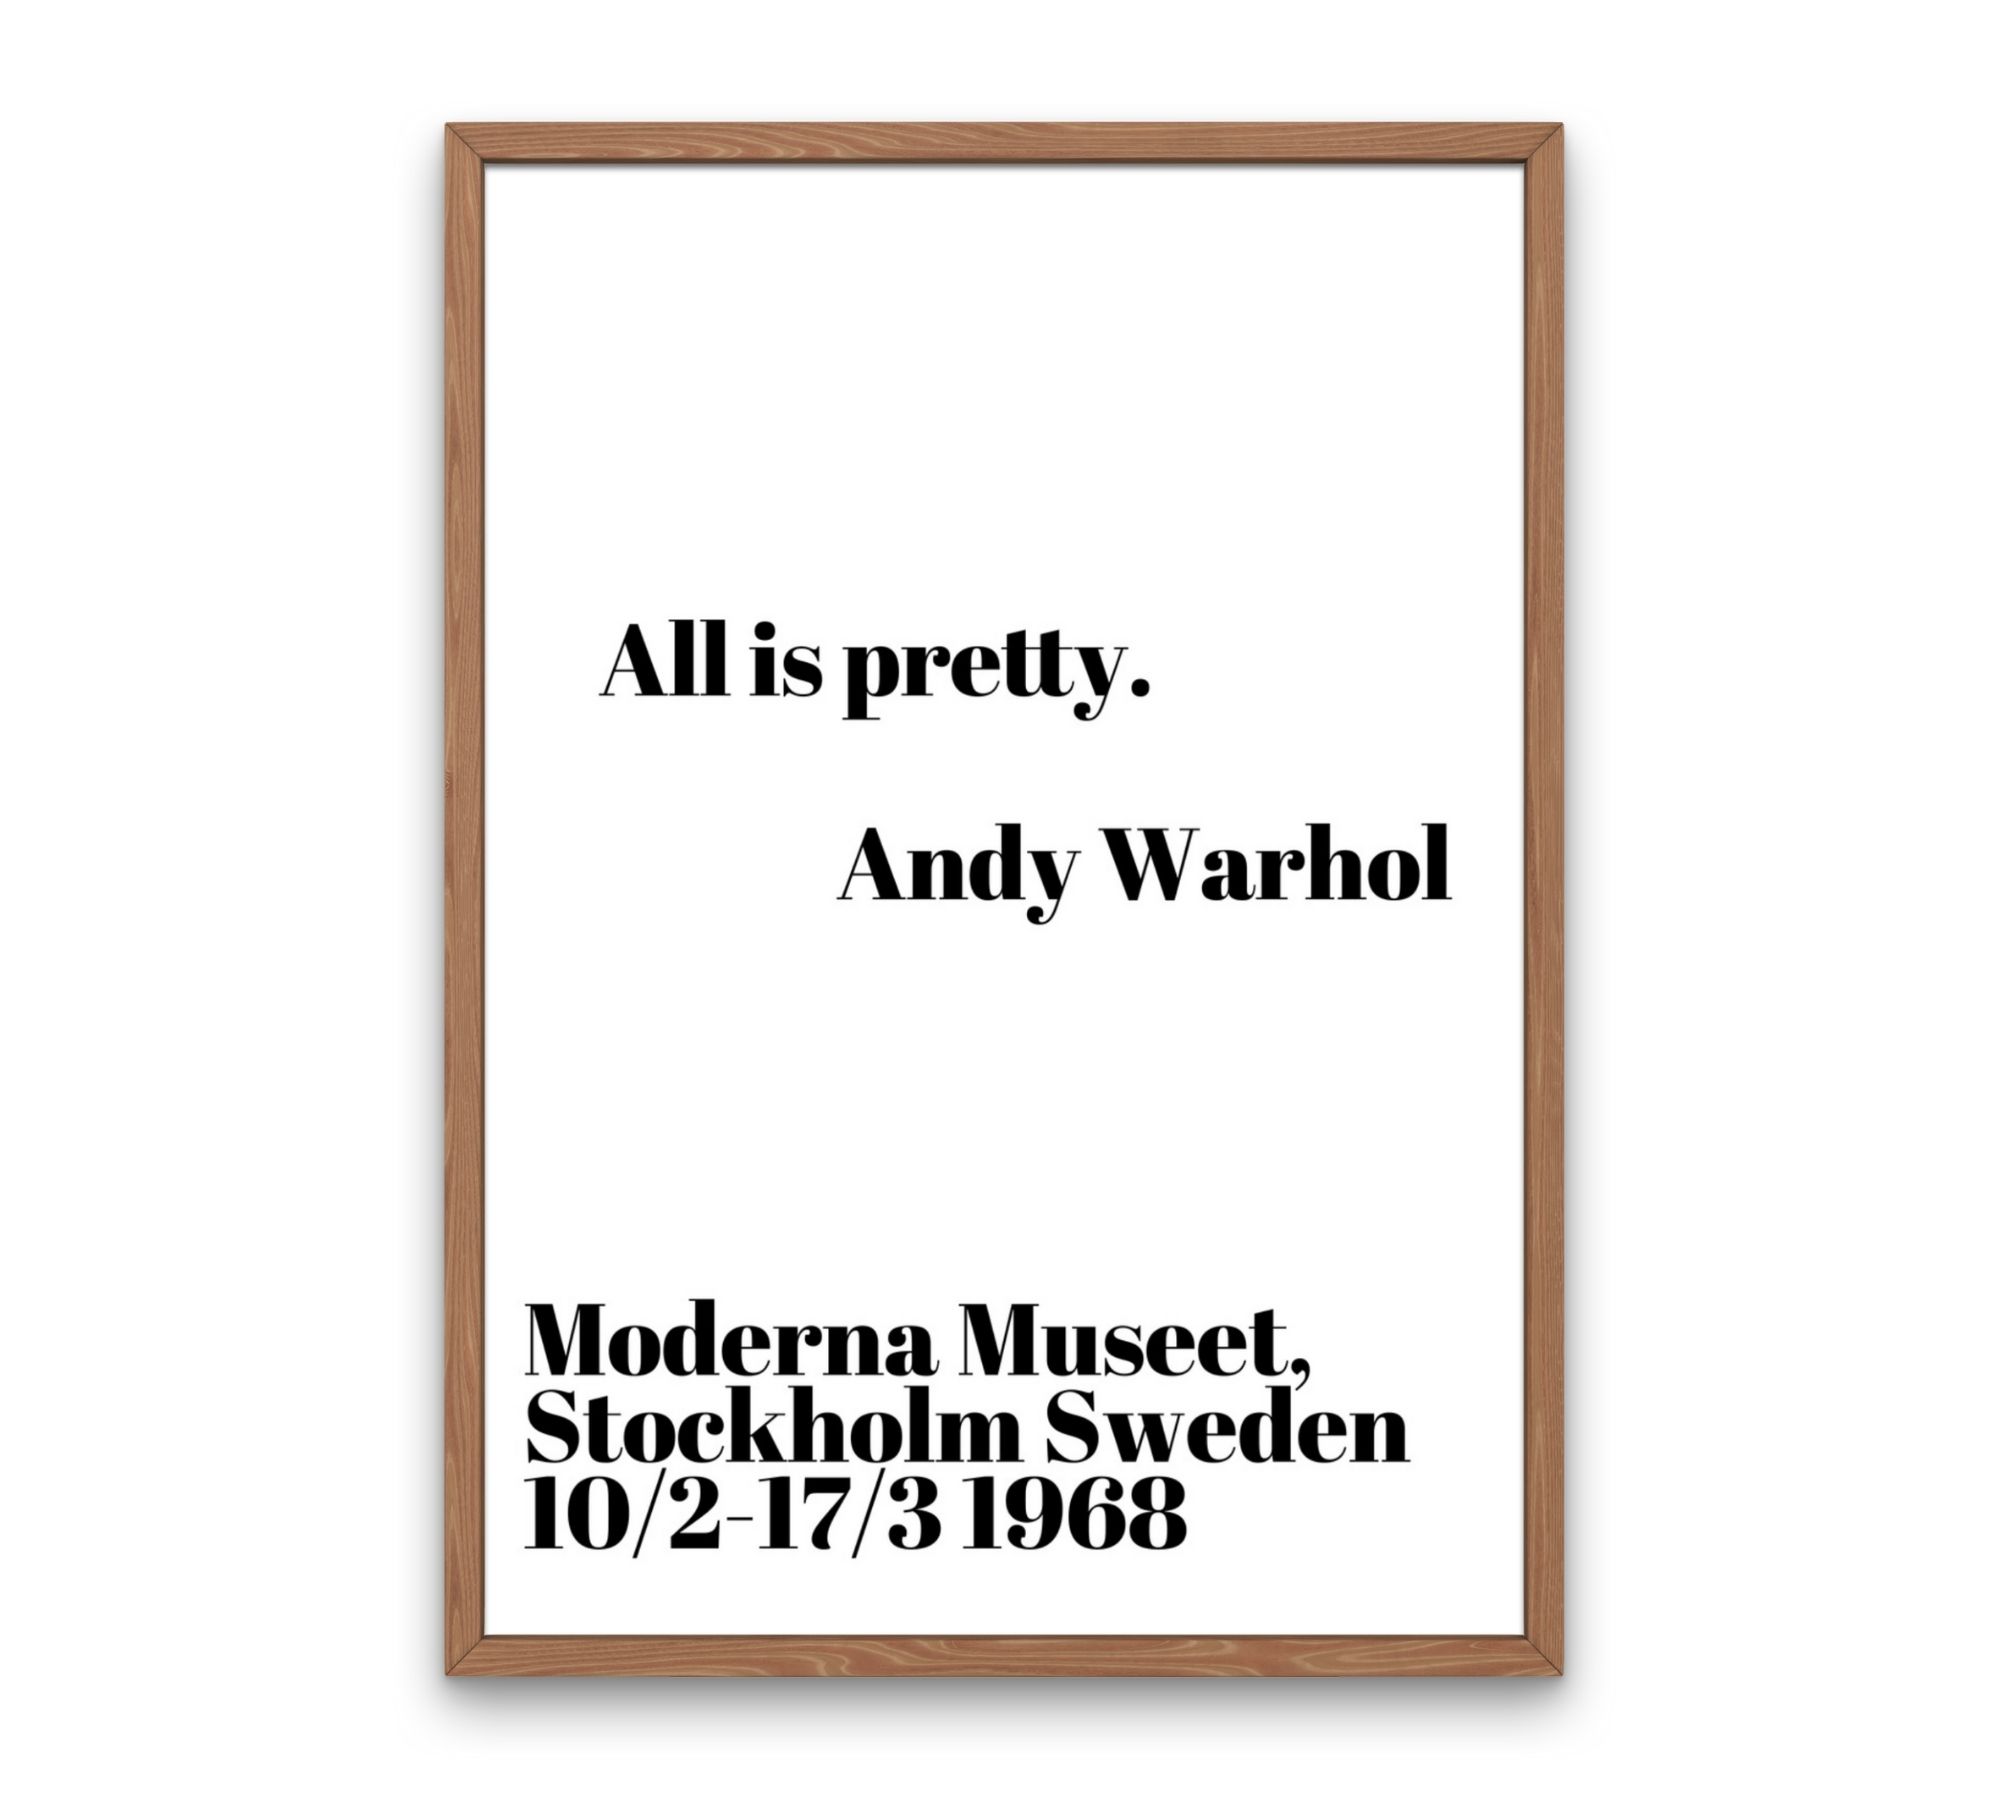 All is pretty - Andy Warhol 70 x 100 cm